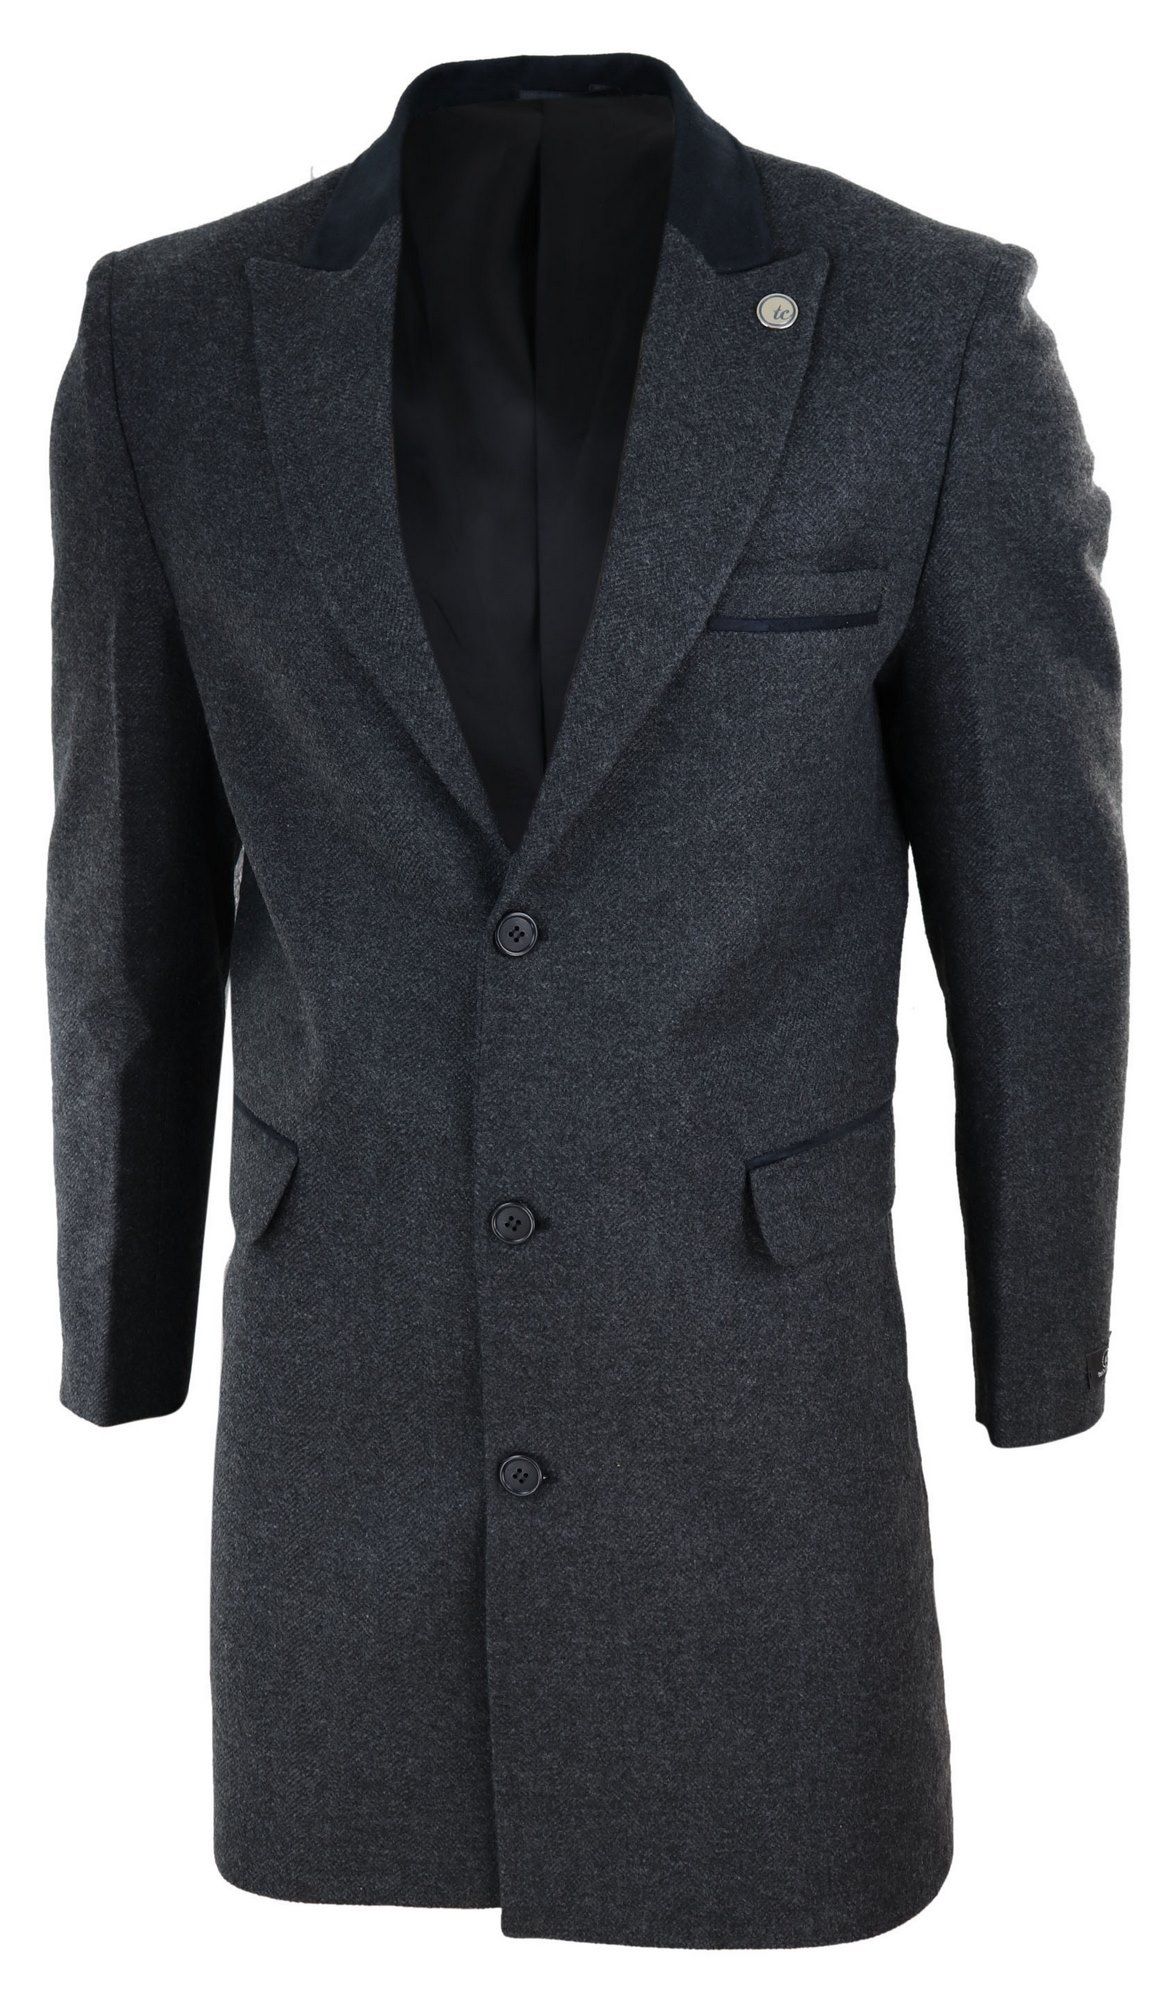 Herringbone Tweed 3/4 Long Overcoat-Charcoal: Buy Online - Happy Gentleman